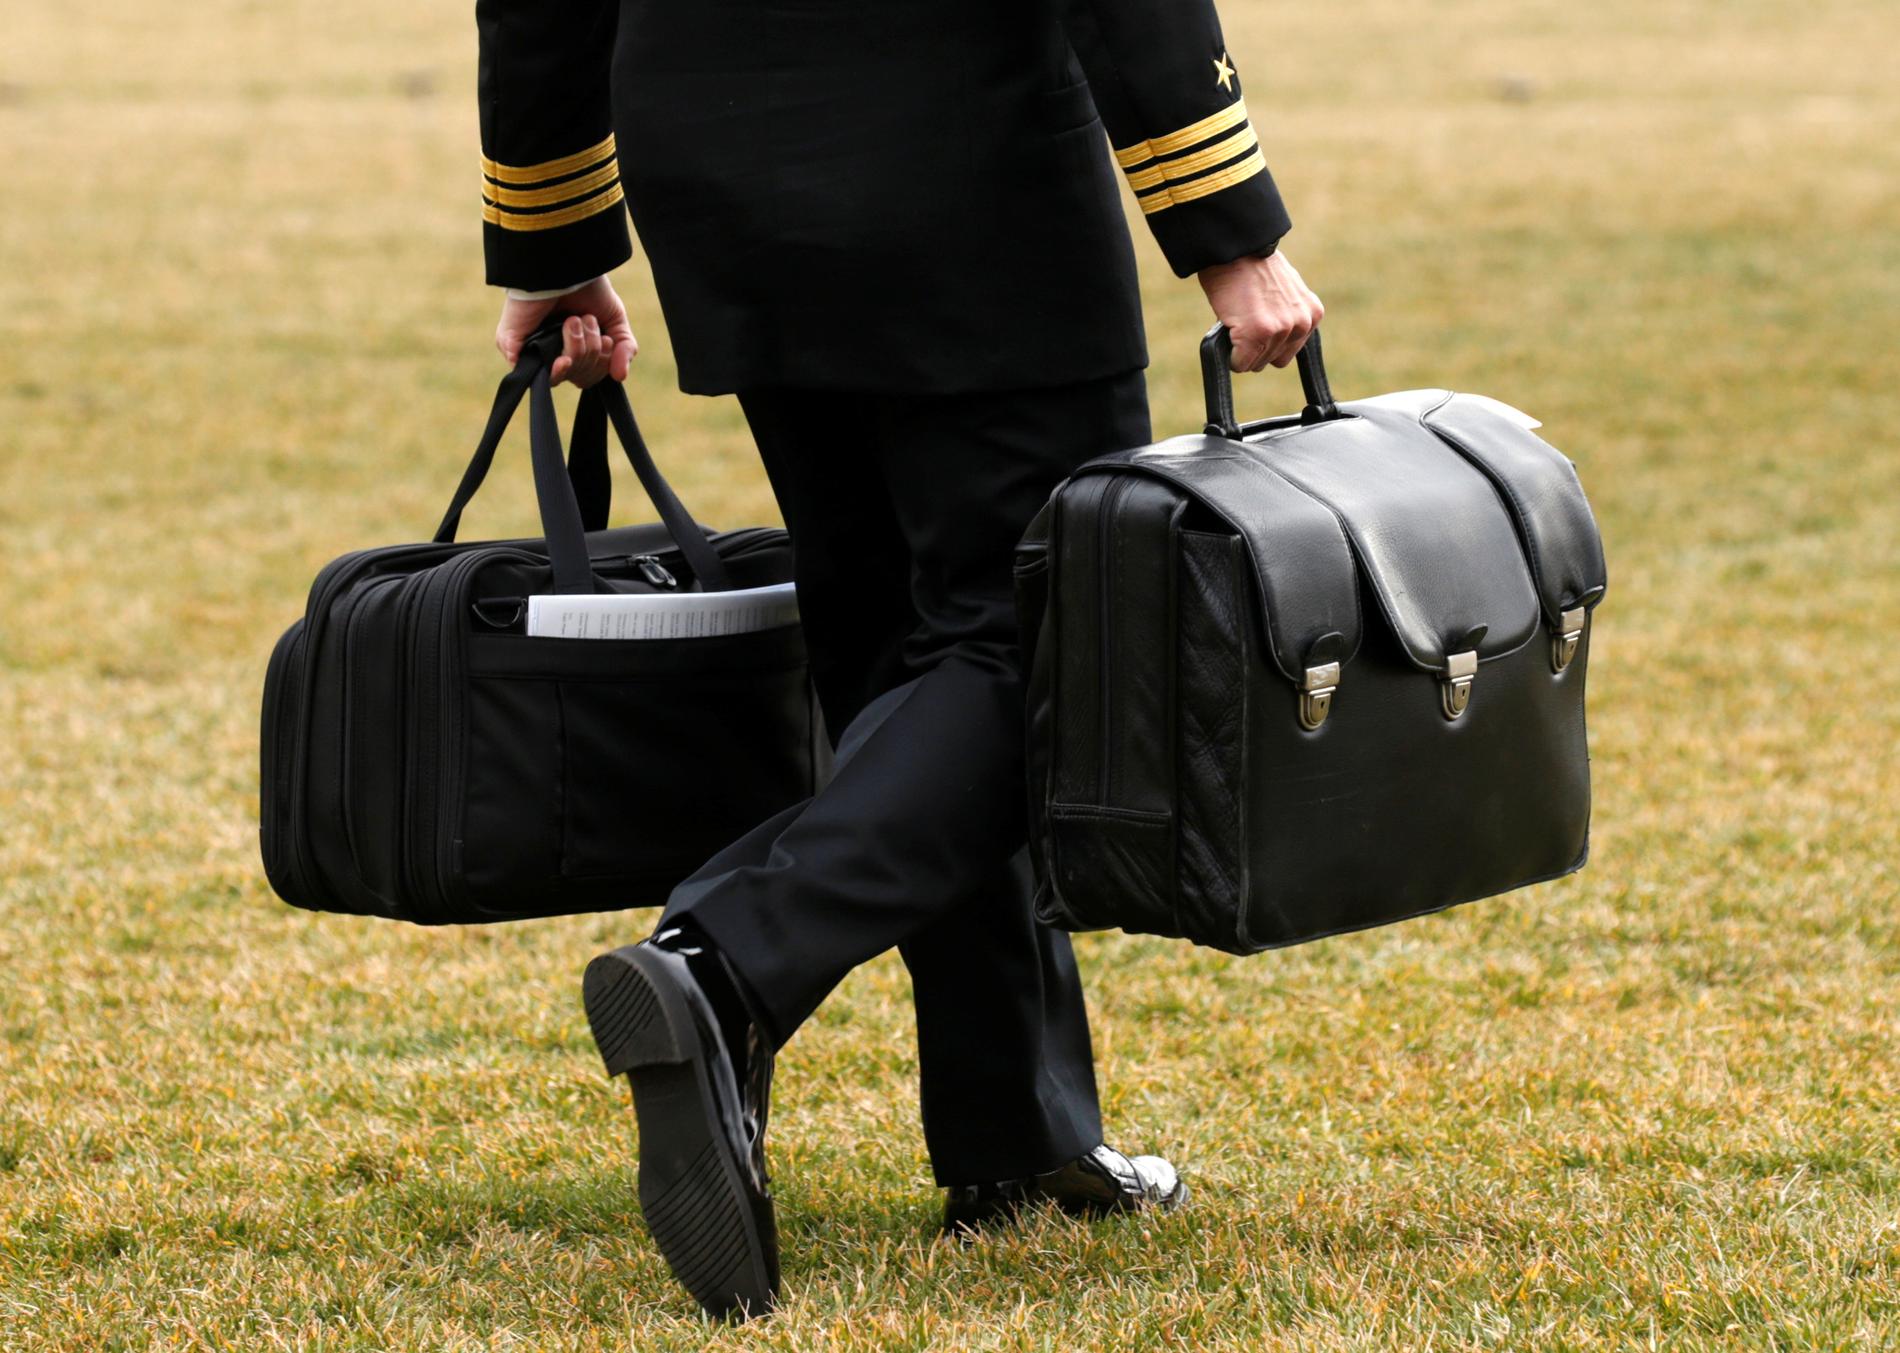 Väskan ”the football” innehåller presidentens kärnvapenkoder. Här bär en soldat väskan till presidentens helikopter Marine One den 3 februari i år. 